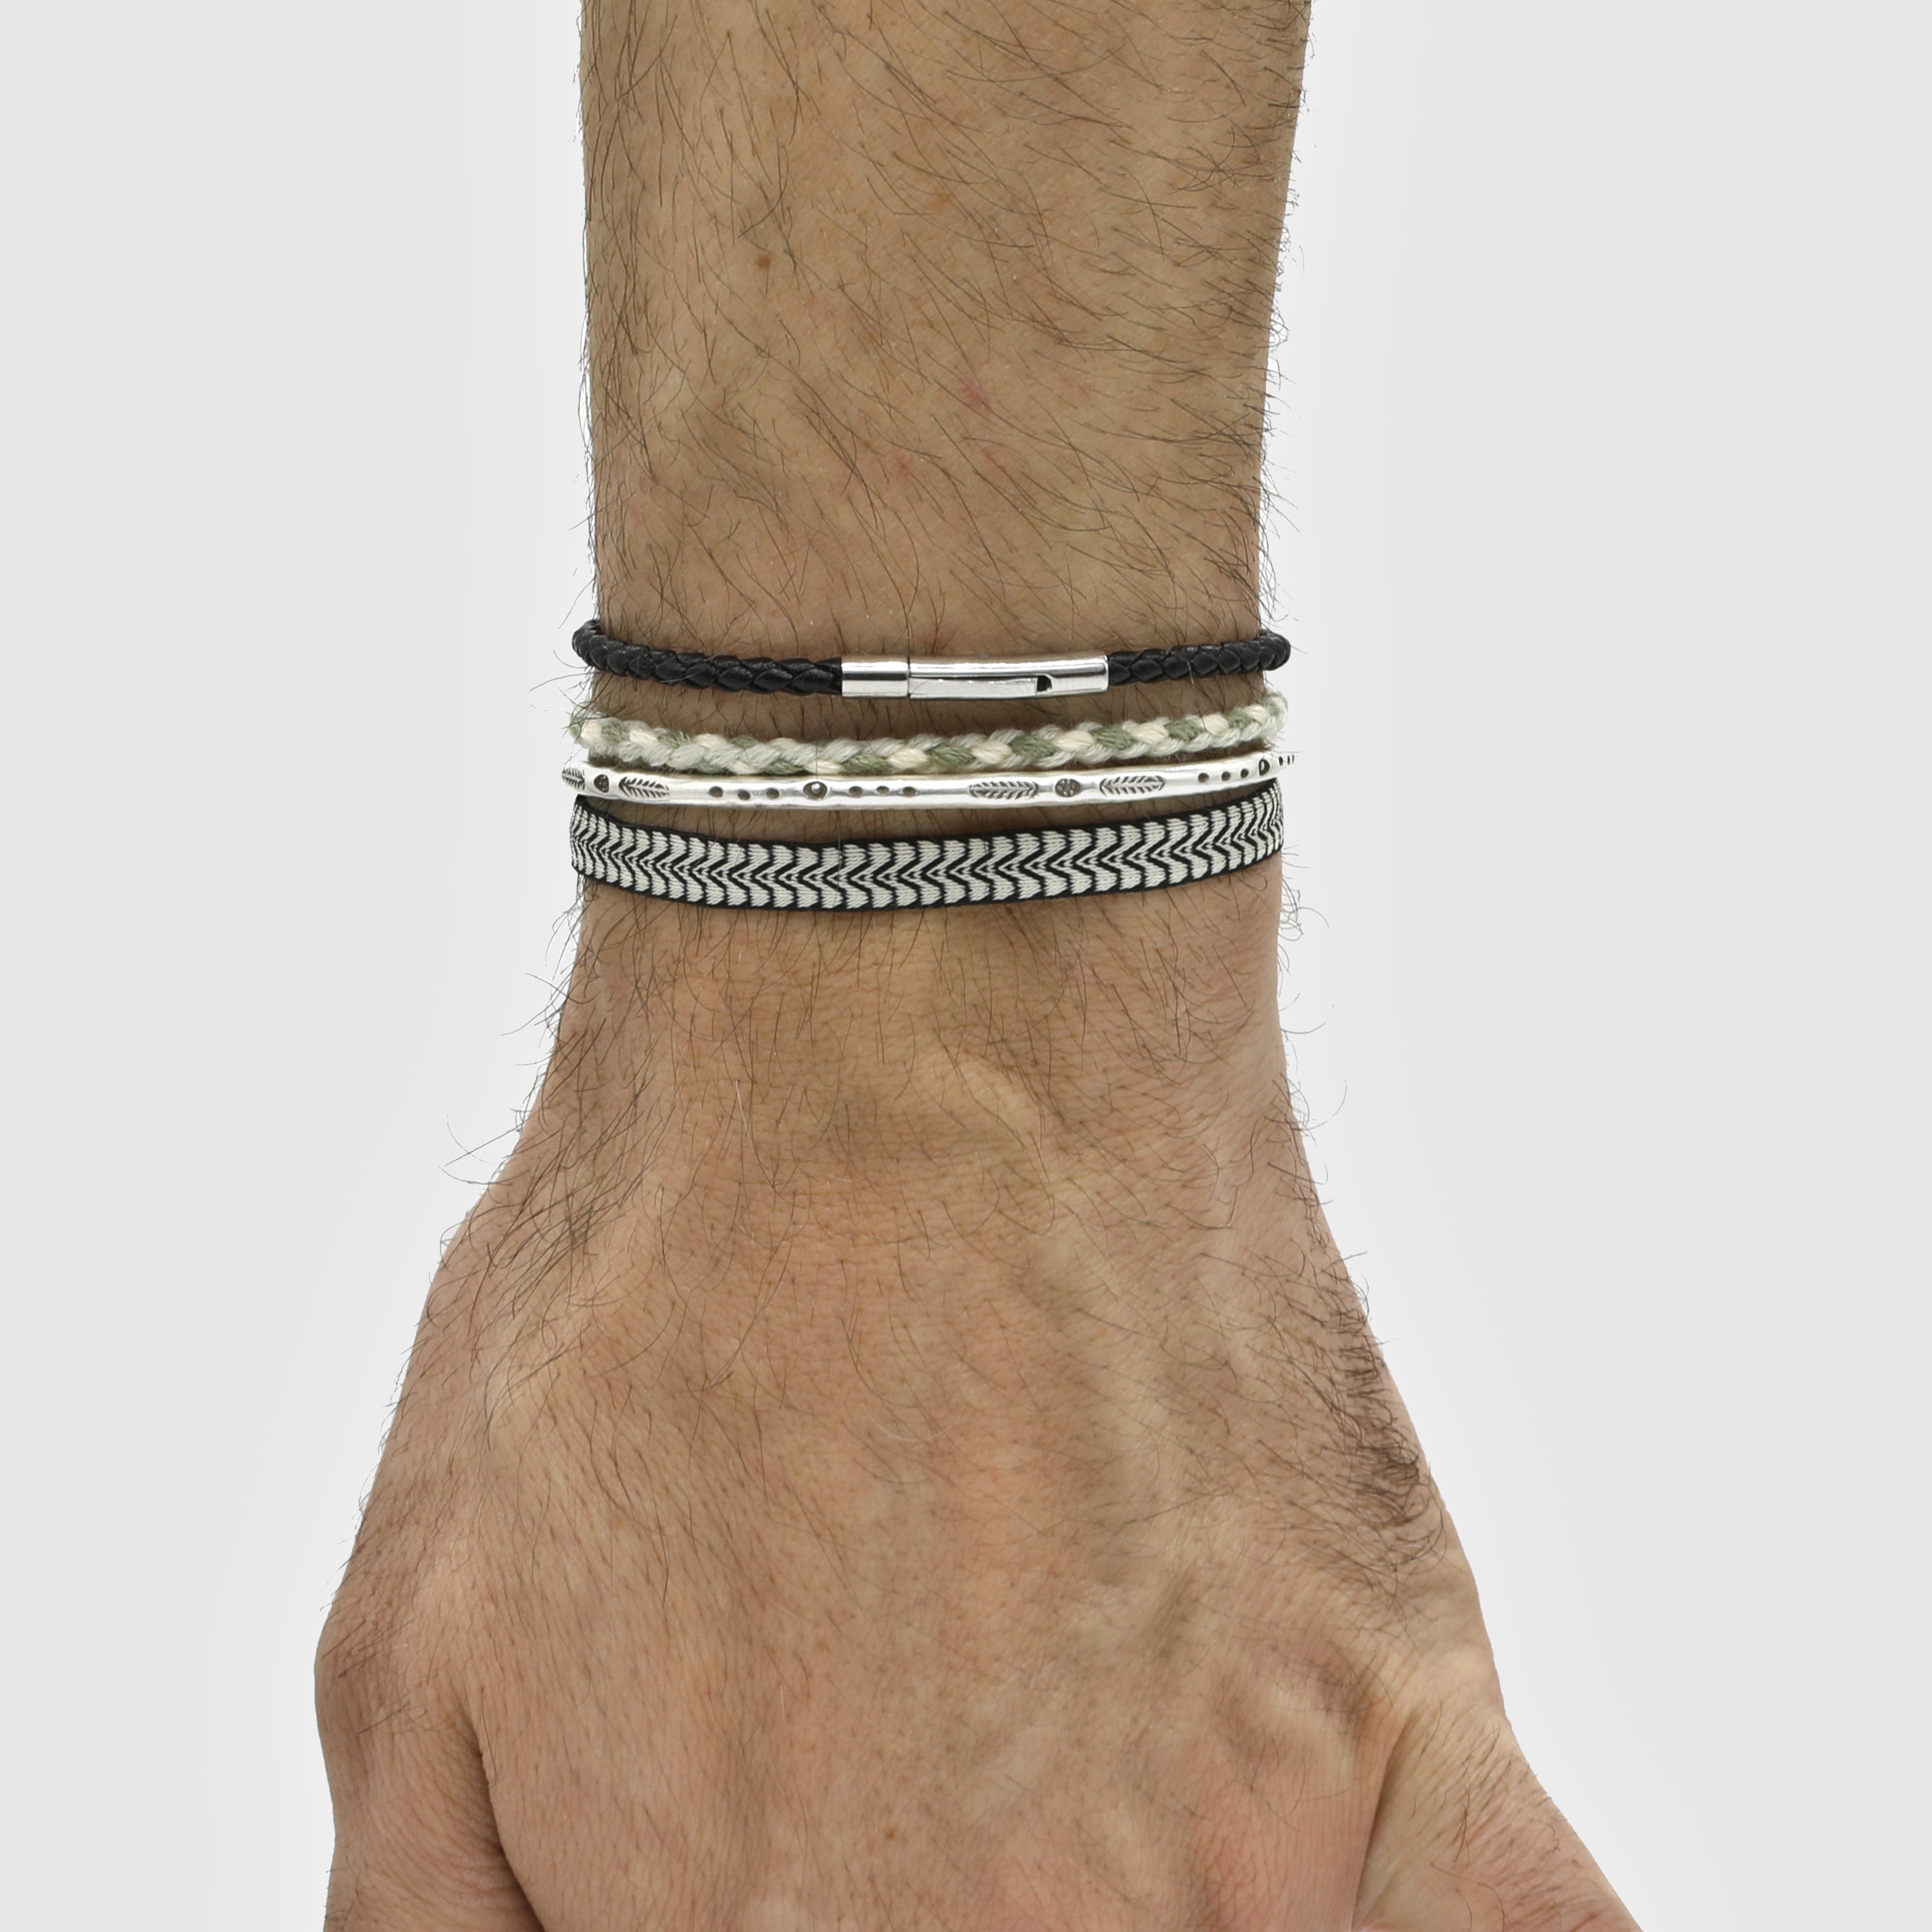 Ladies Italian Bracelet in Sterling Silver Pure 925 BIS Hallmarked |  JewelDealz